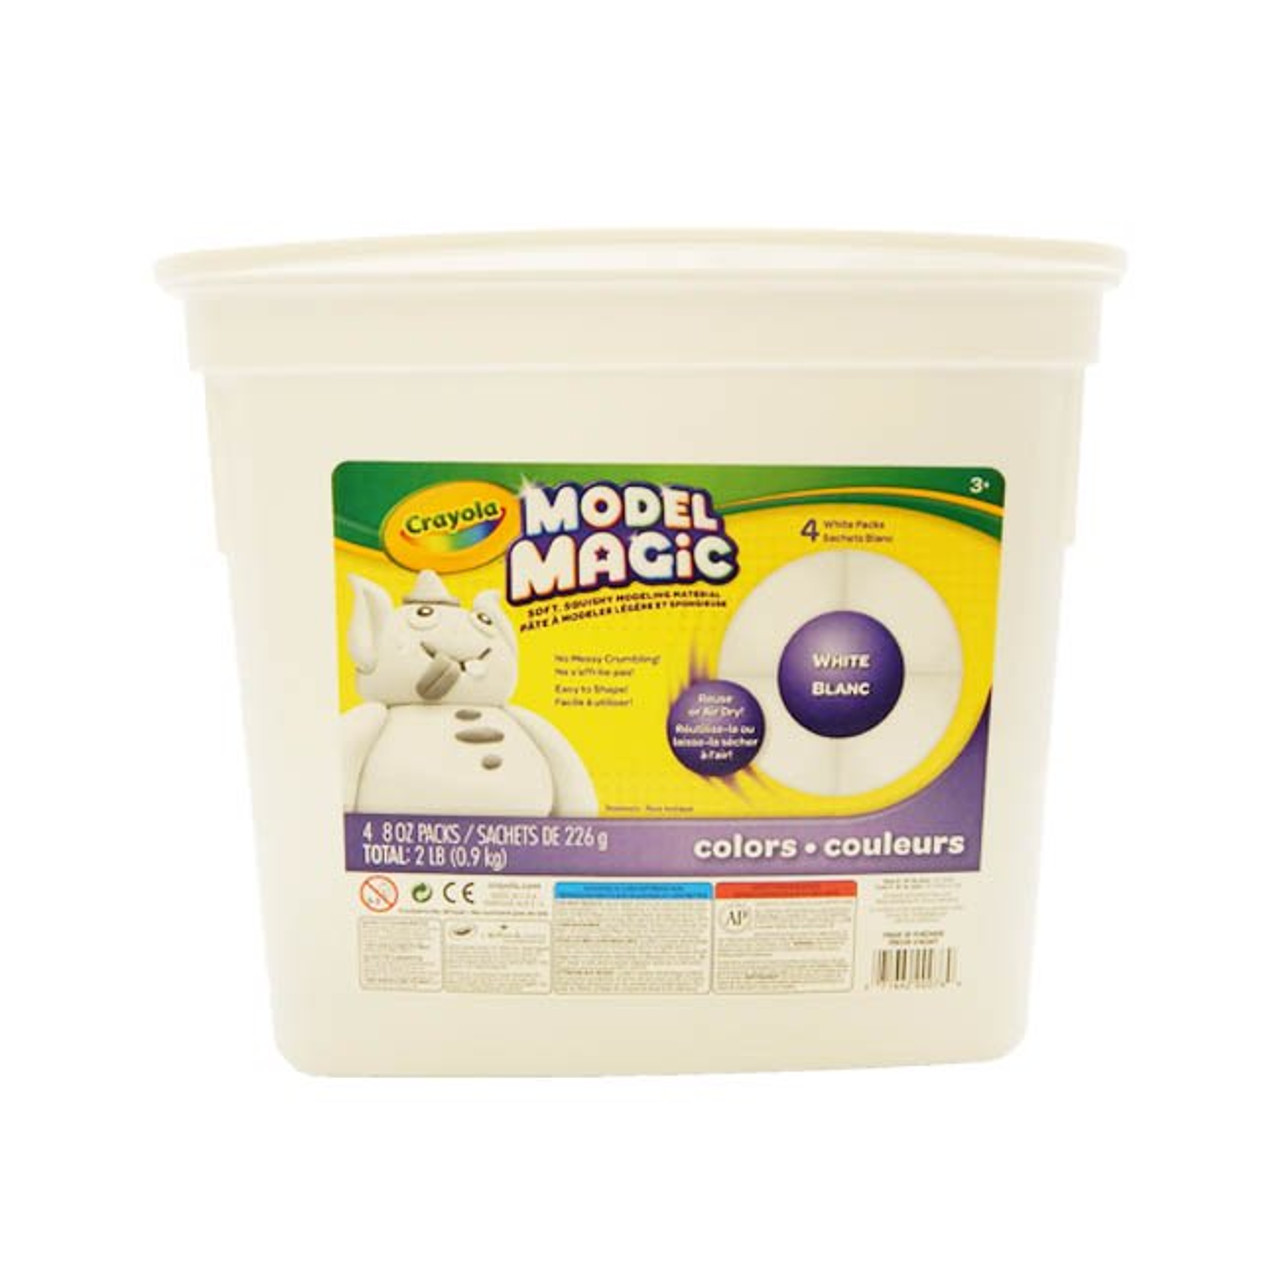 Crayola Model Magic White 2 Pound Bucket - Artist & Craftsman Supply